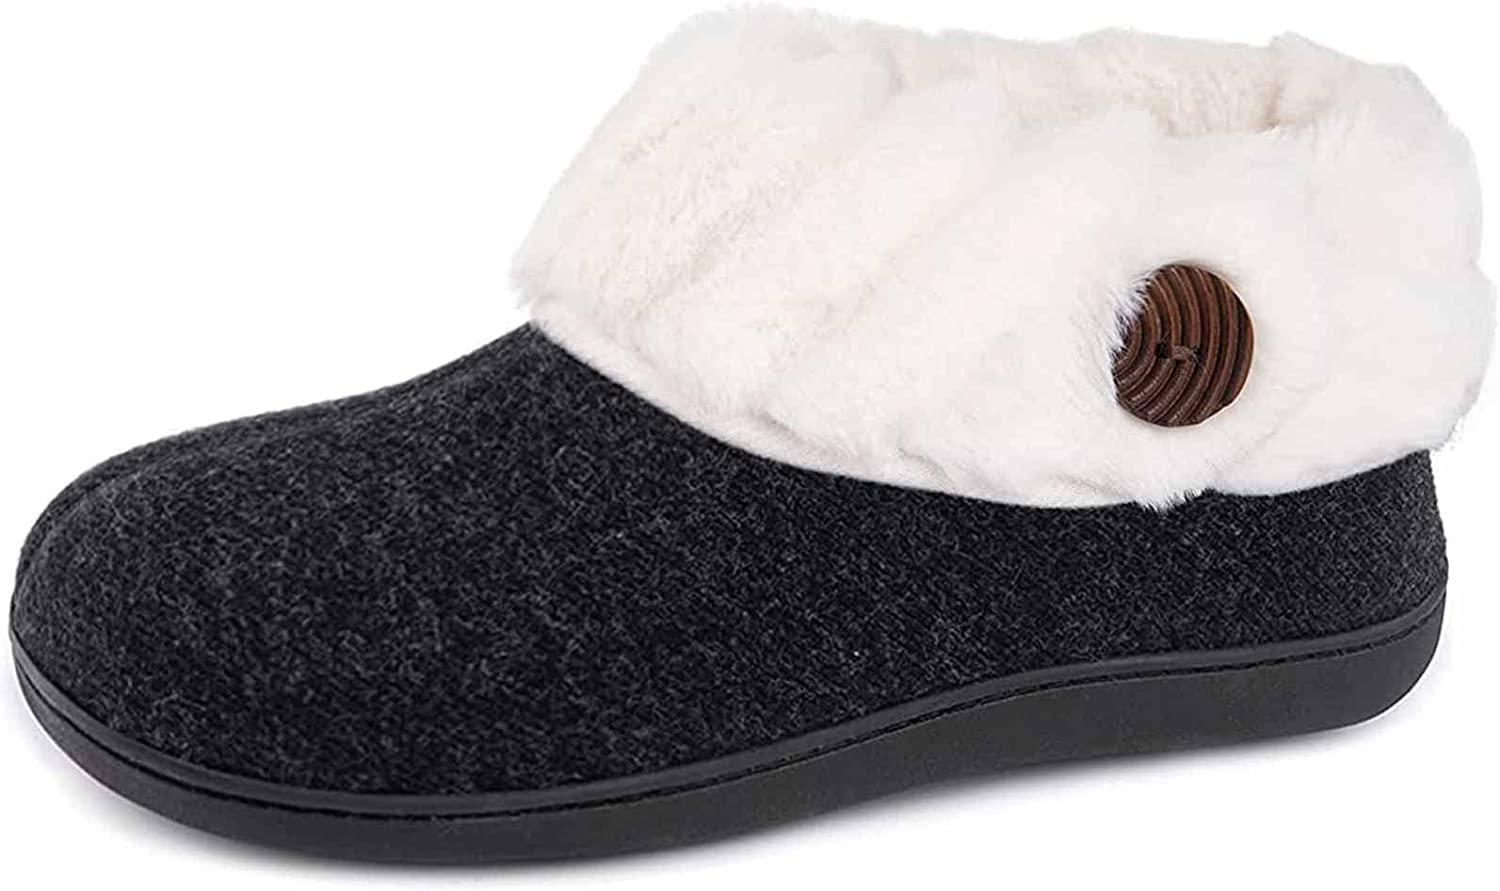 dictator Moedig aan Vooruitzien Wishcotton Women's Fuzzy Felt Cozy Slippers, Ladies' Closed Back House Shoes  wit | eBay